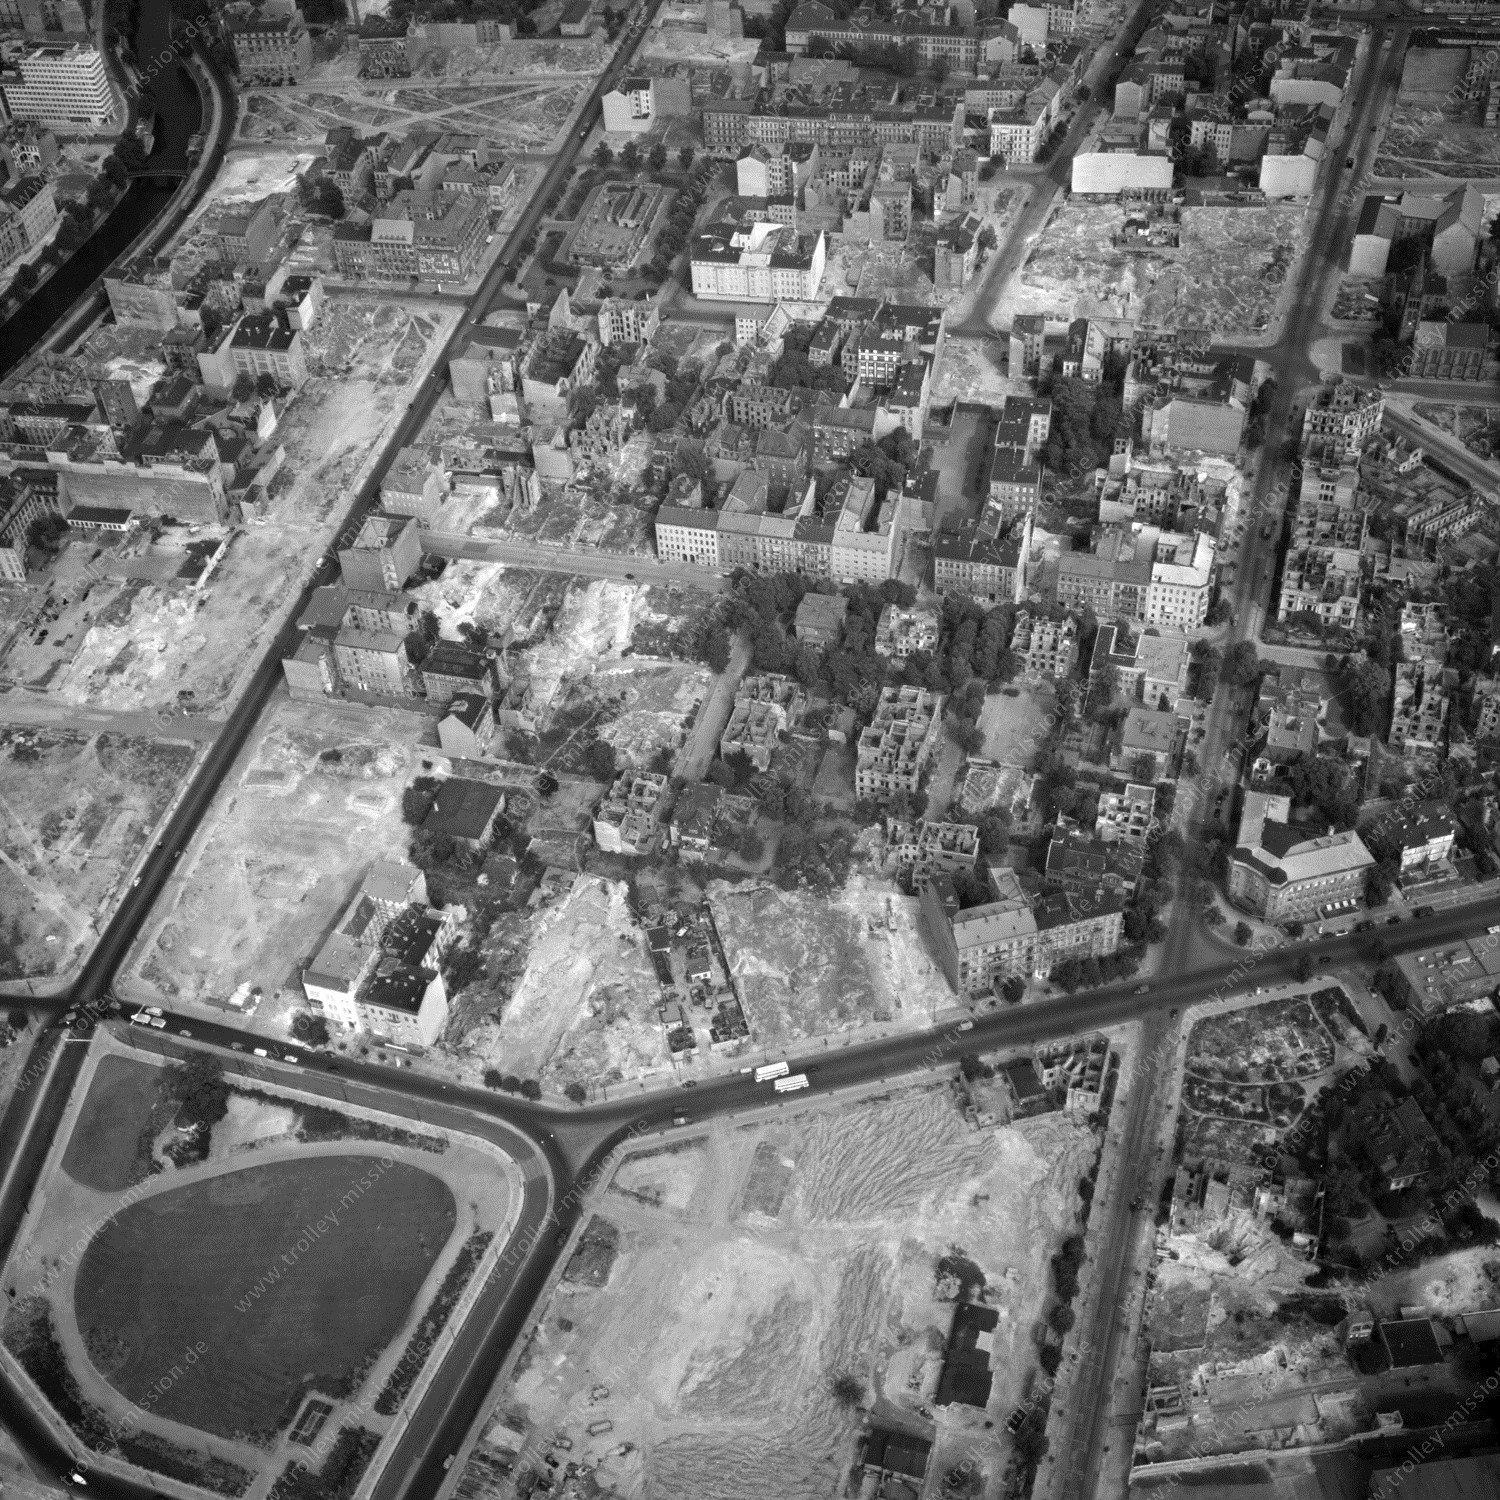 Alte Fotos und Luftbilder von Berlin - Luftbildaufnahme Nr. 02 - Historische Luftaufnahmen von West-Berlin aus dem Jahr 1954 - Flugstrecke Whiskey